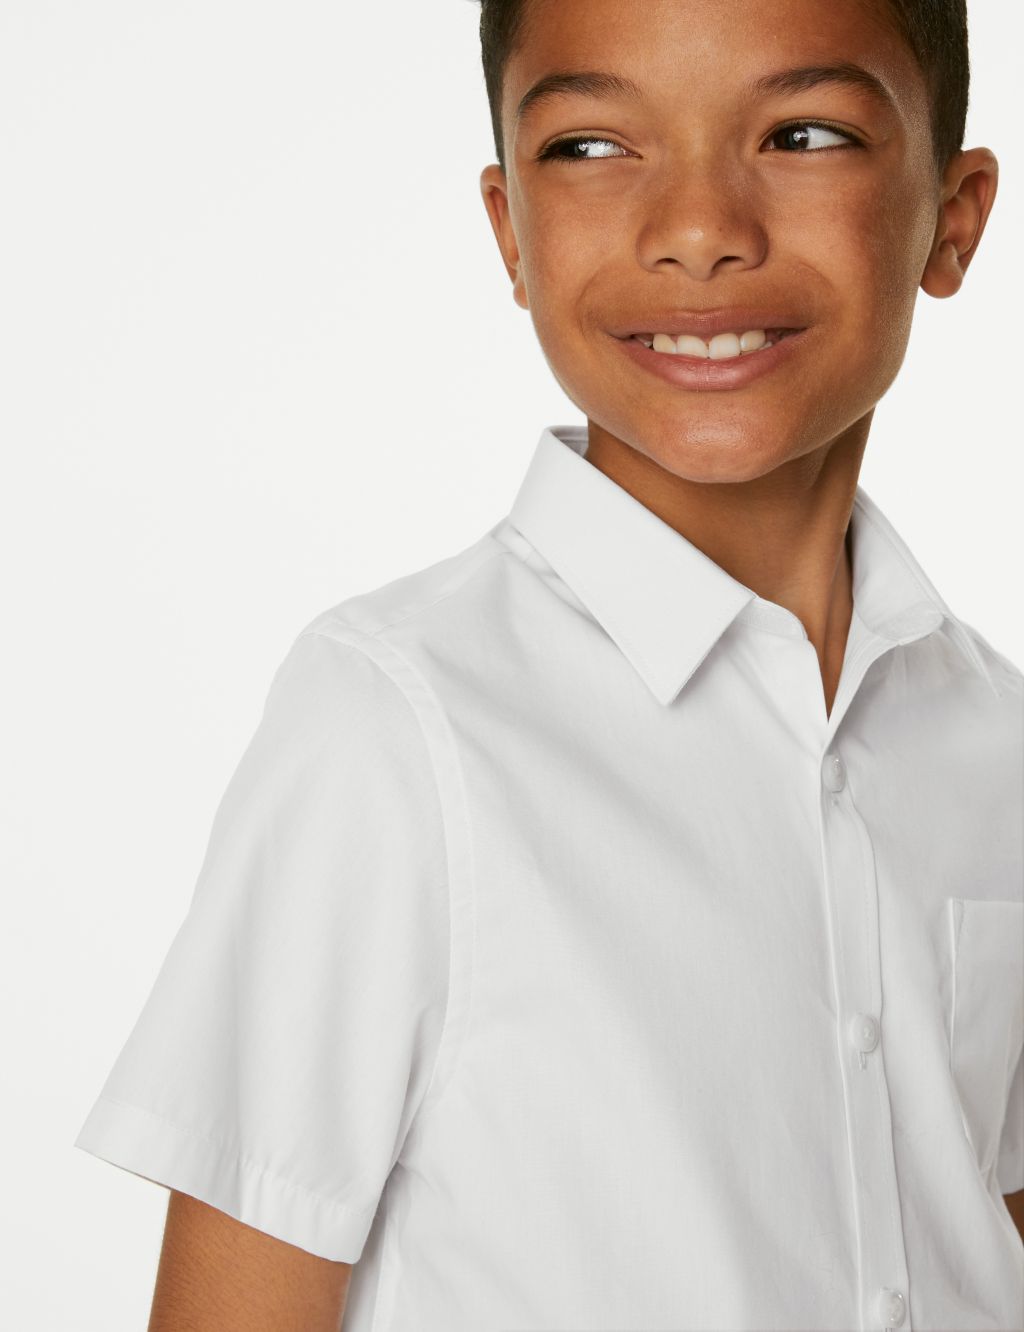 2pk Boys' Slim Fit Cotton School Shirts (2-18 Yrs) image 4